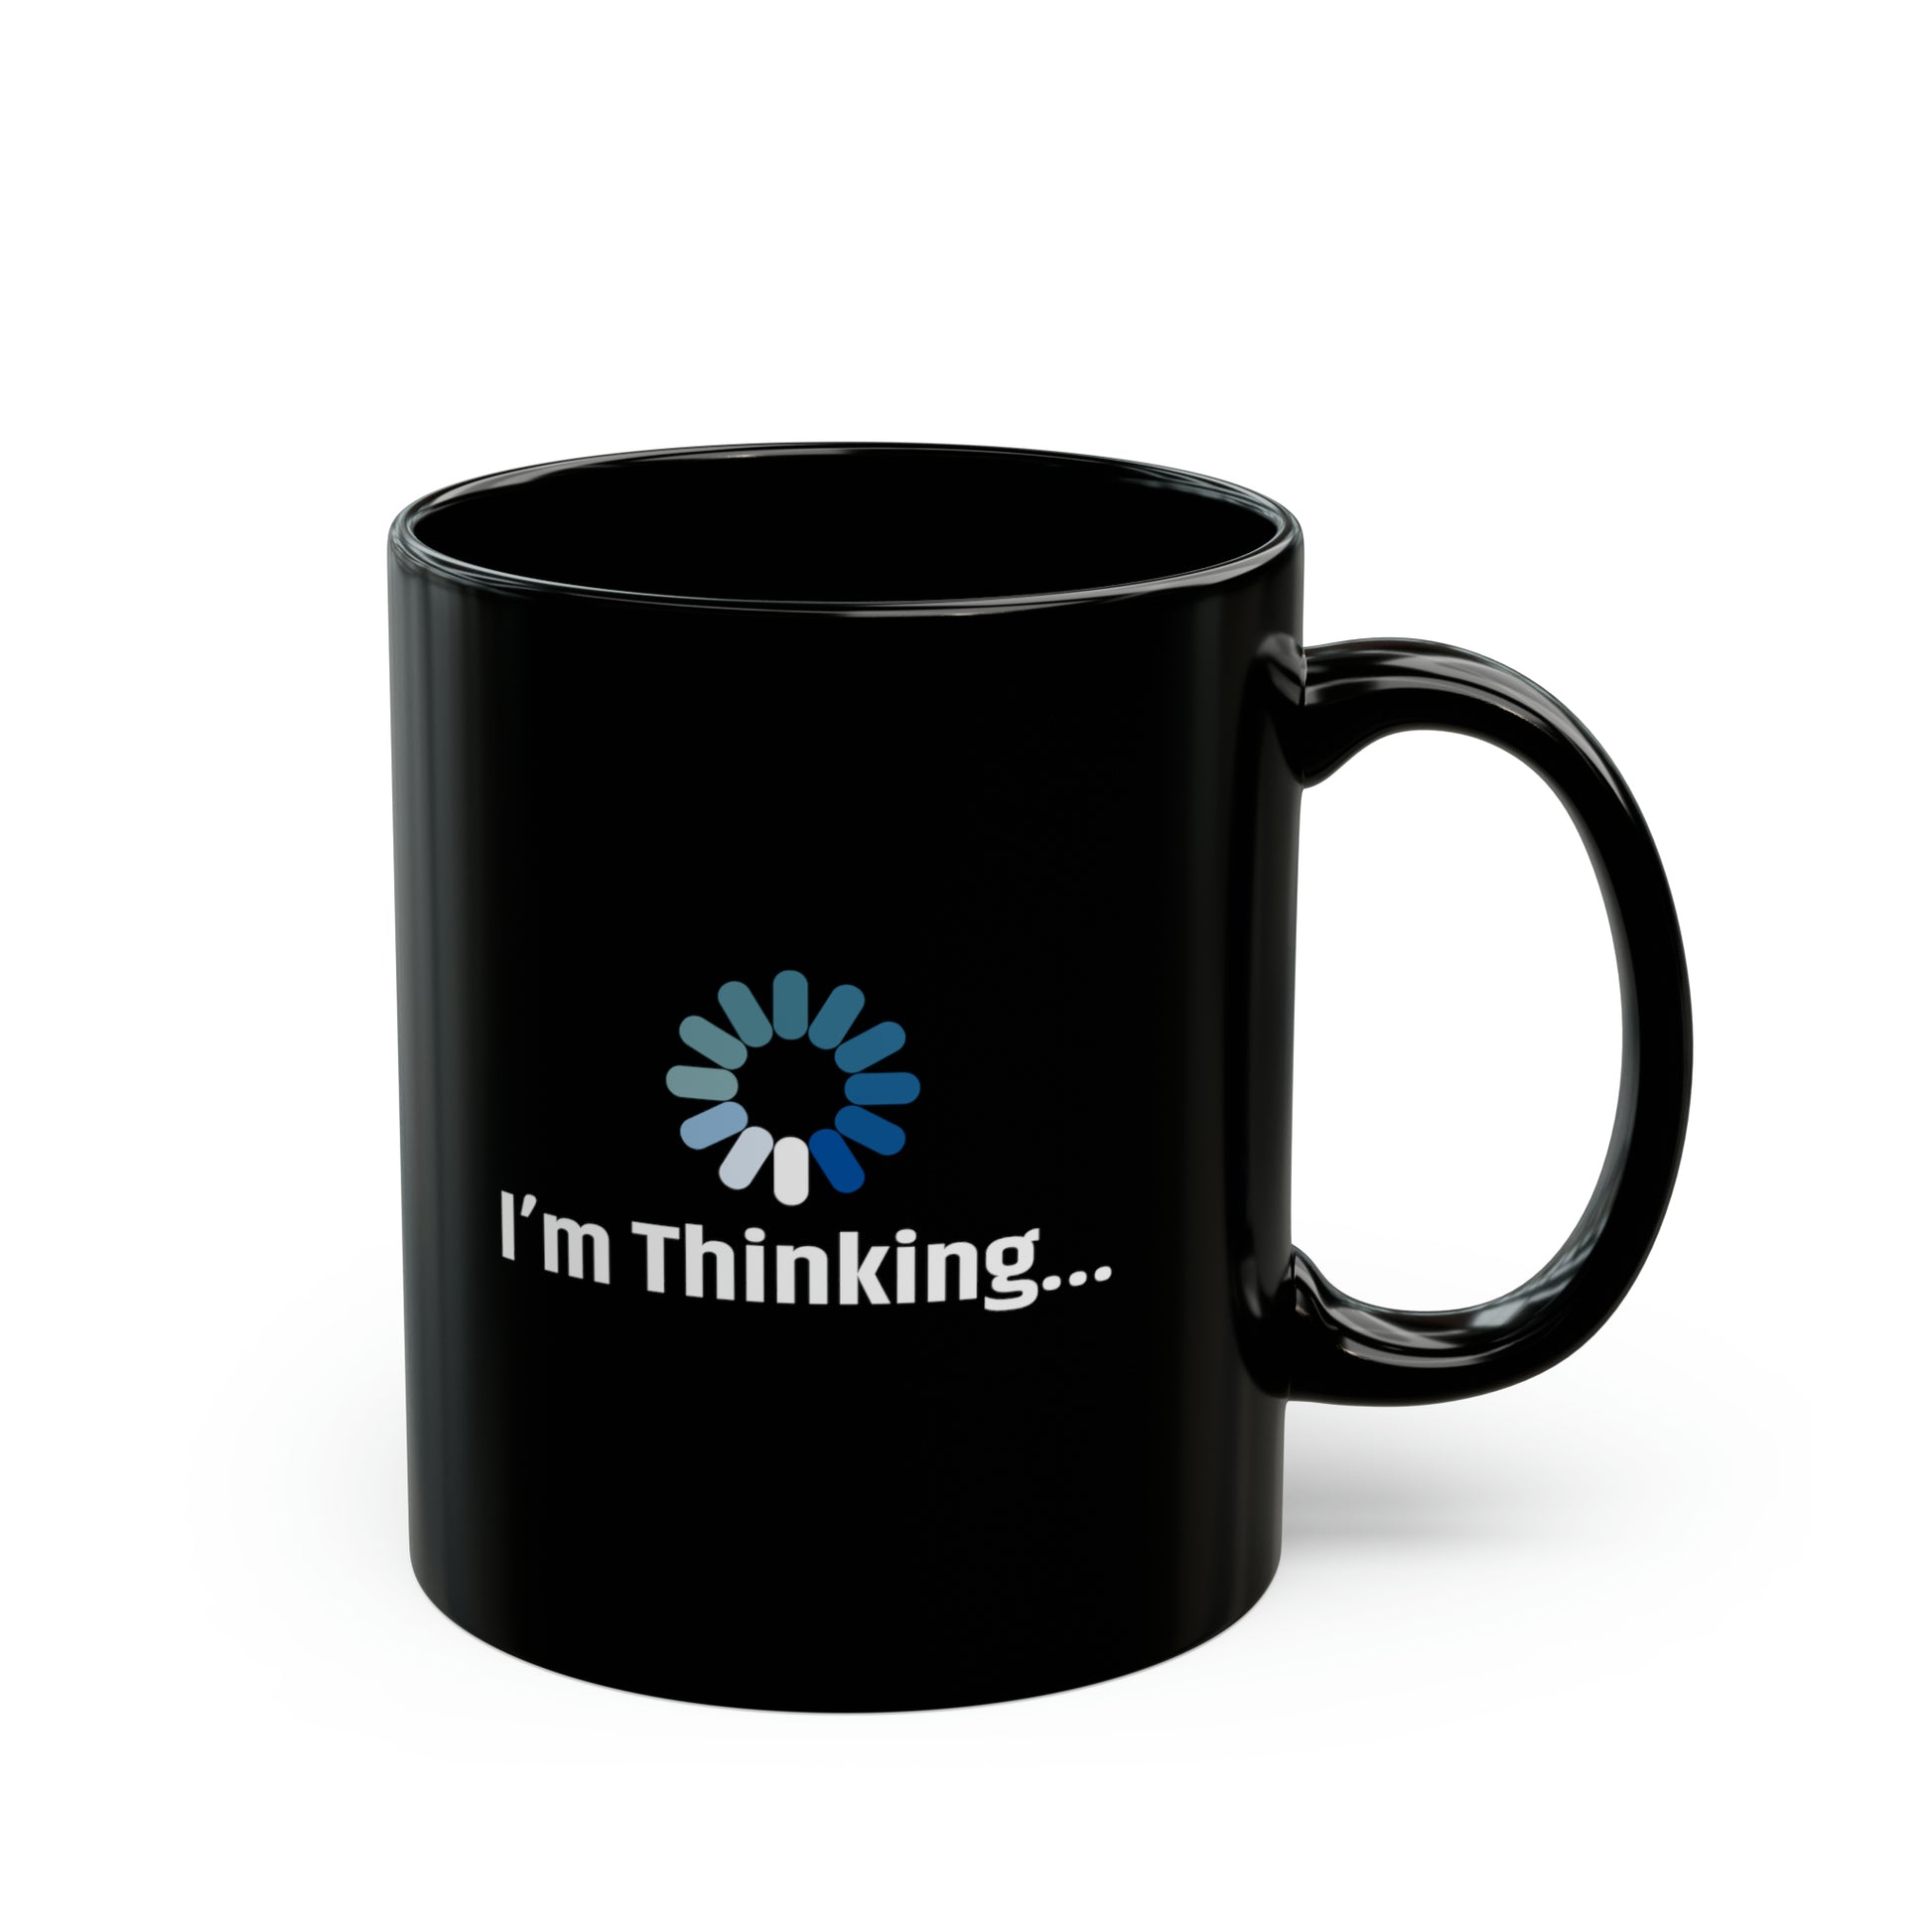 Funny Mugs: I'm Thinking